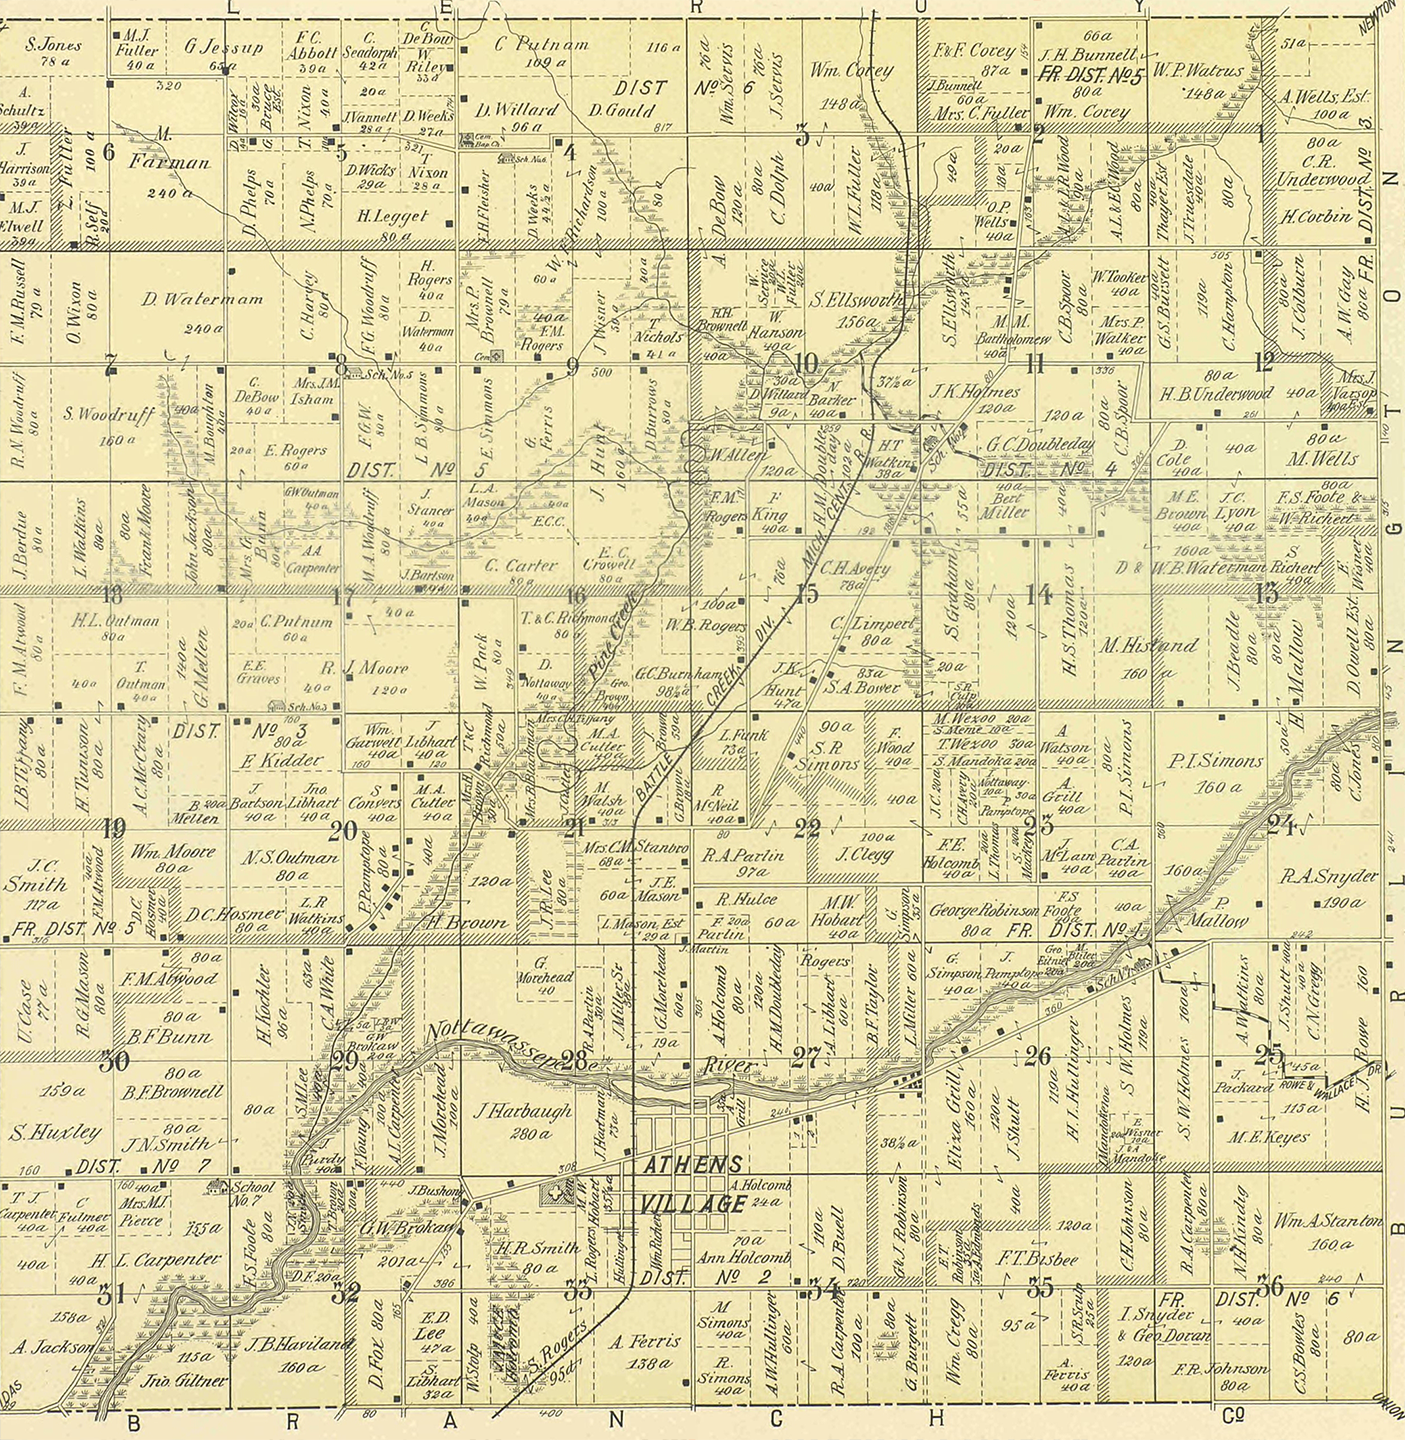 1894 Athens Township, Michigan landownership map